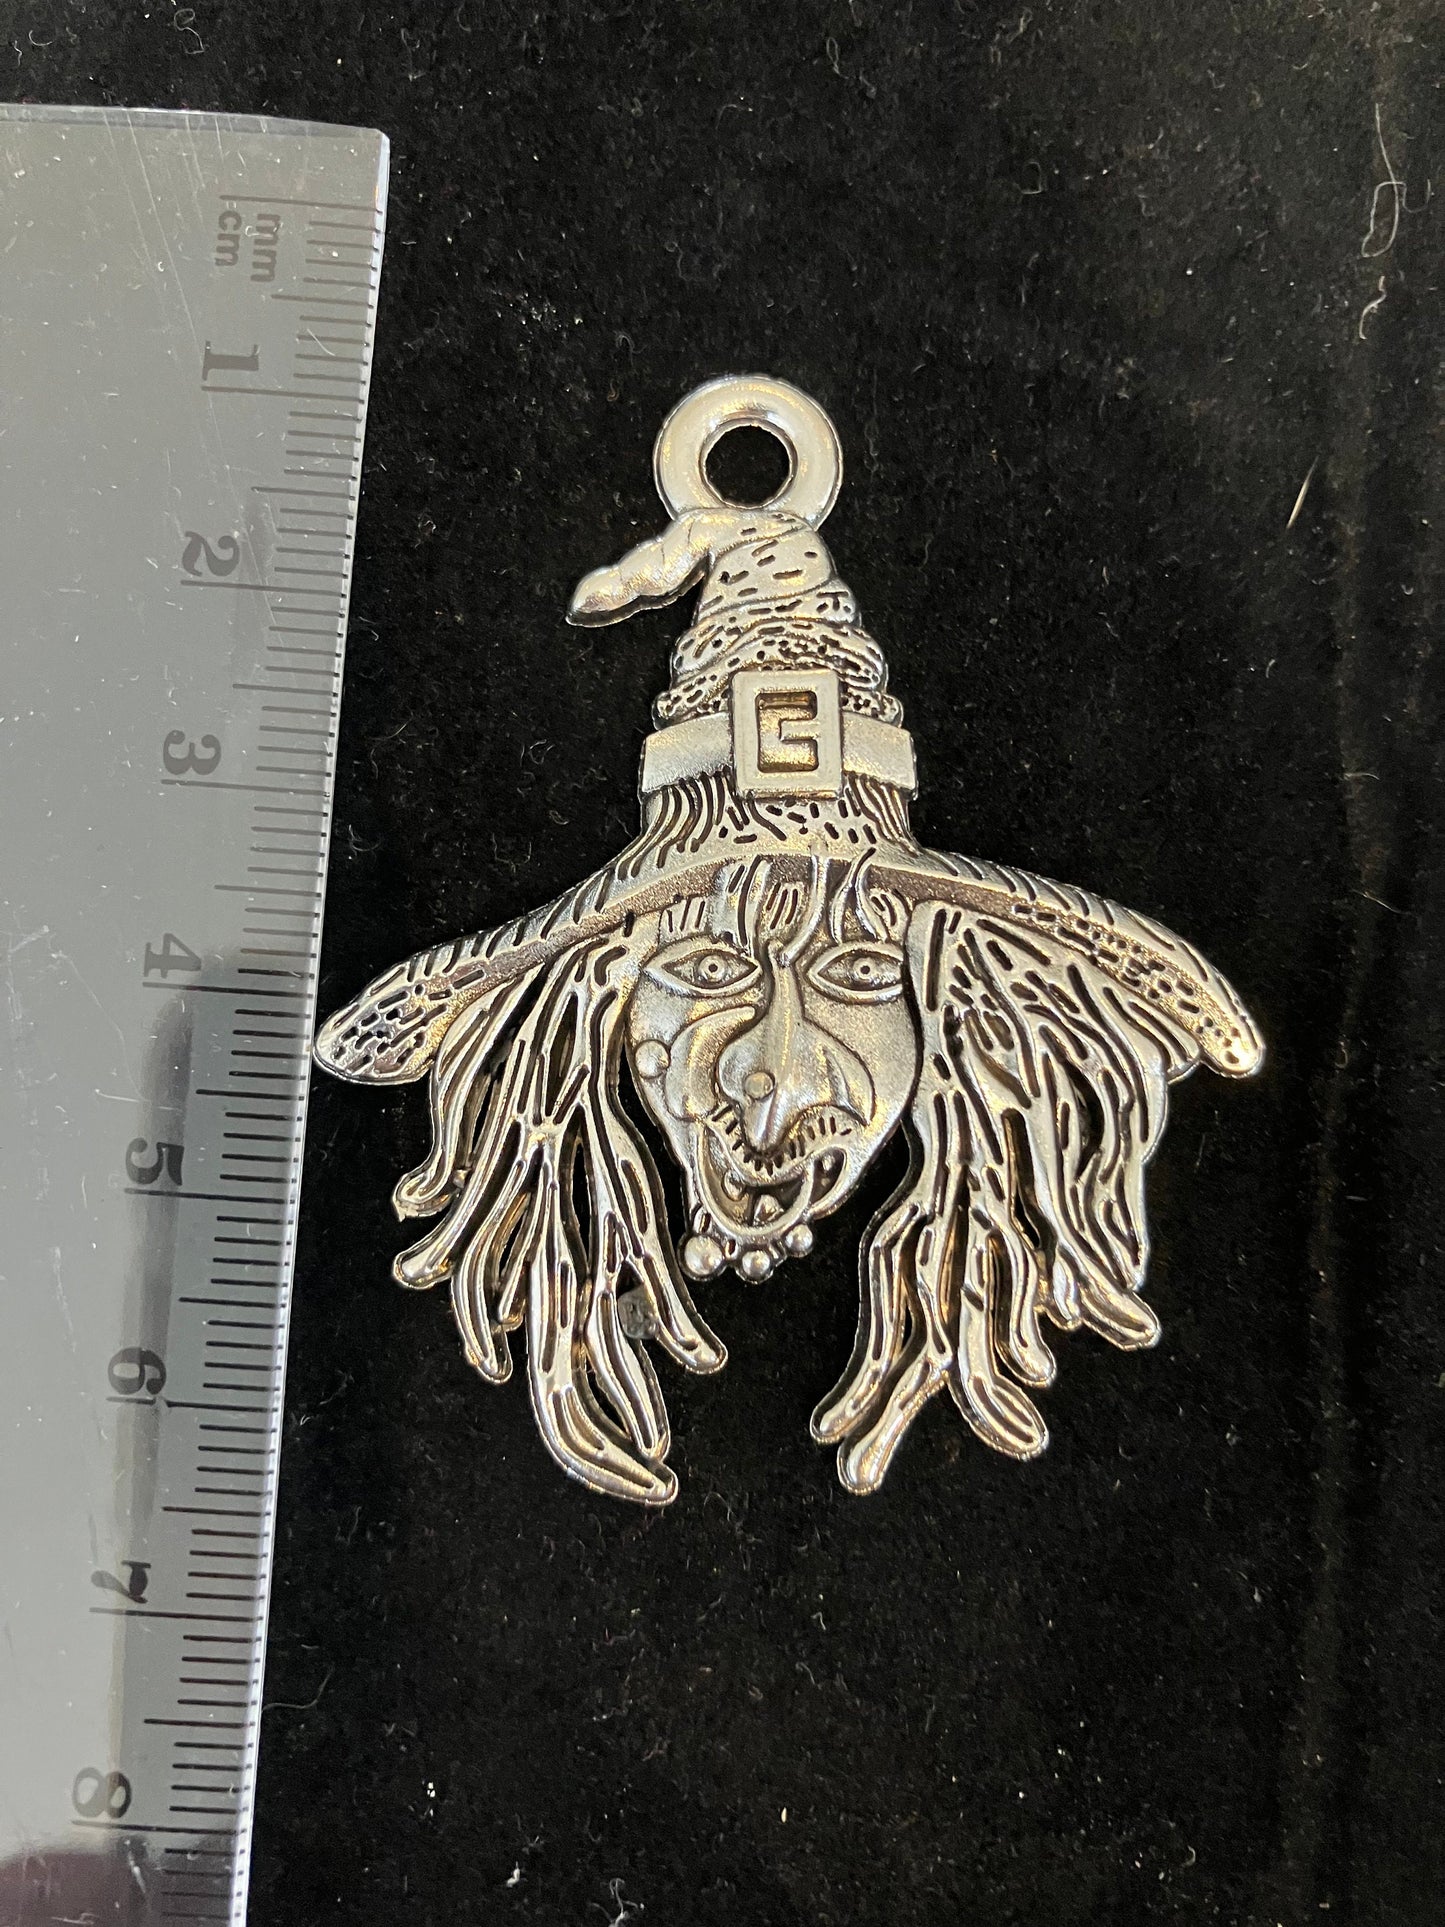 Antique silver colour witch face pendant